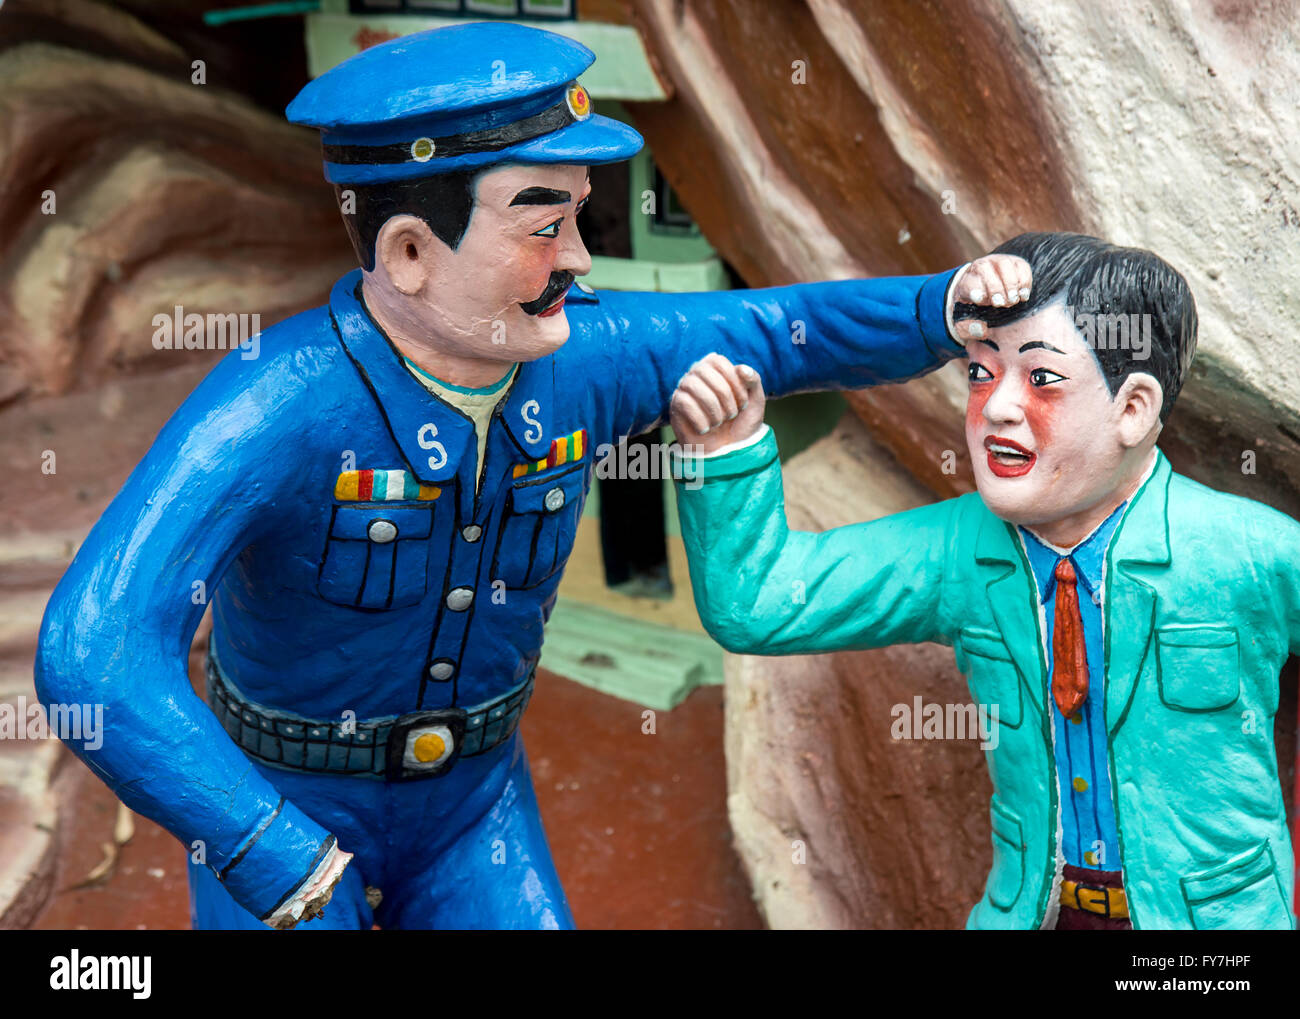 Aggressive policeman attacking a citizen Stock Photo